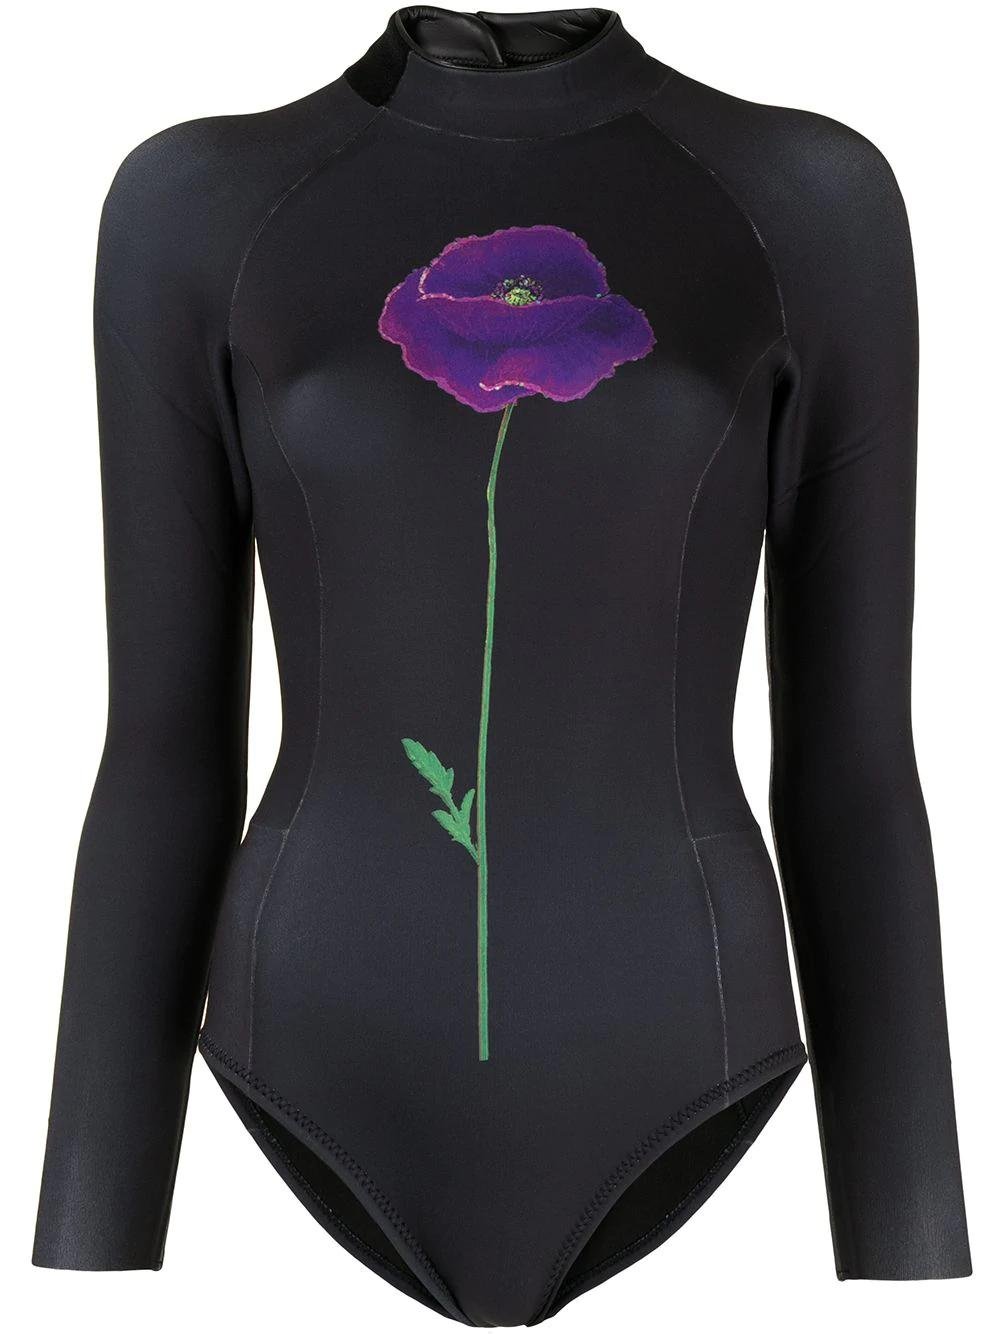 Jett poppy wetsuit by CYNTHIA ROWLEY